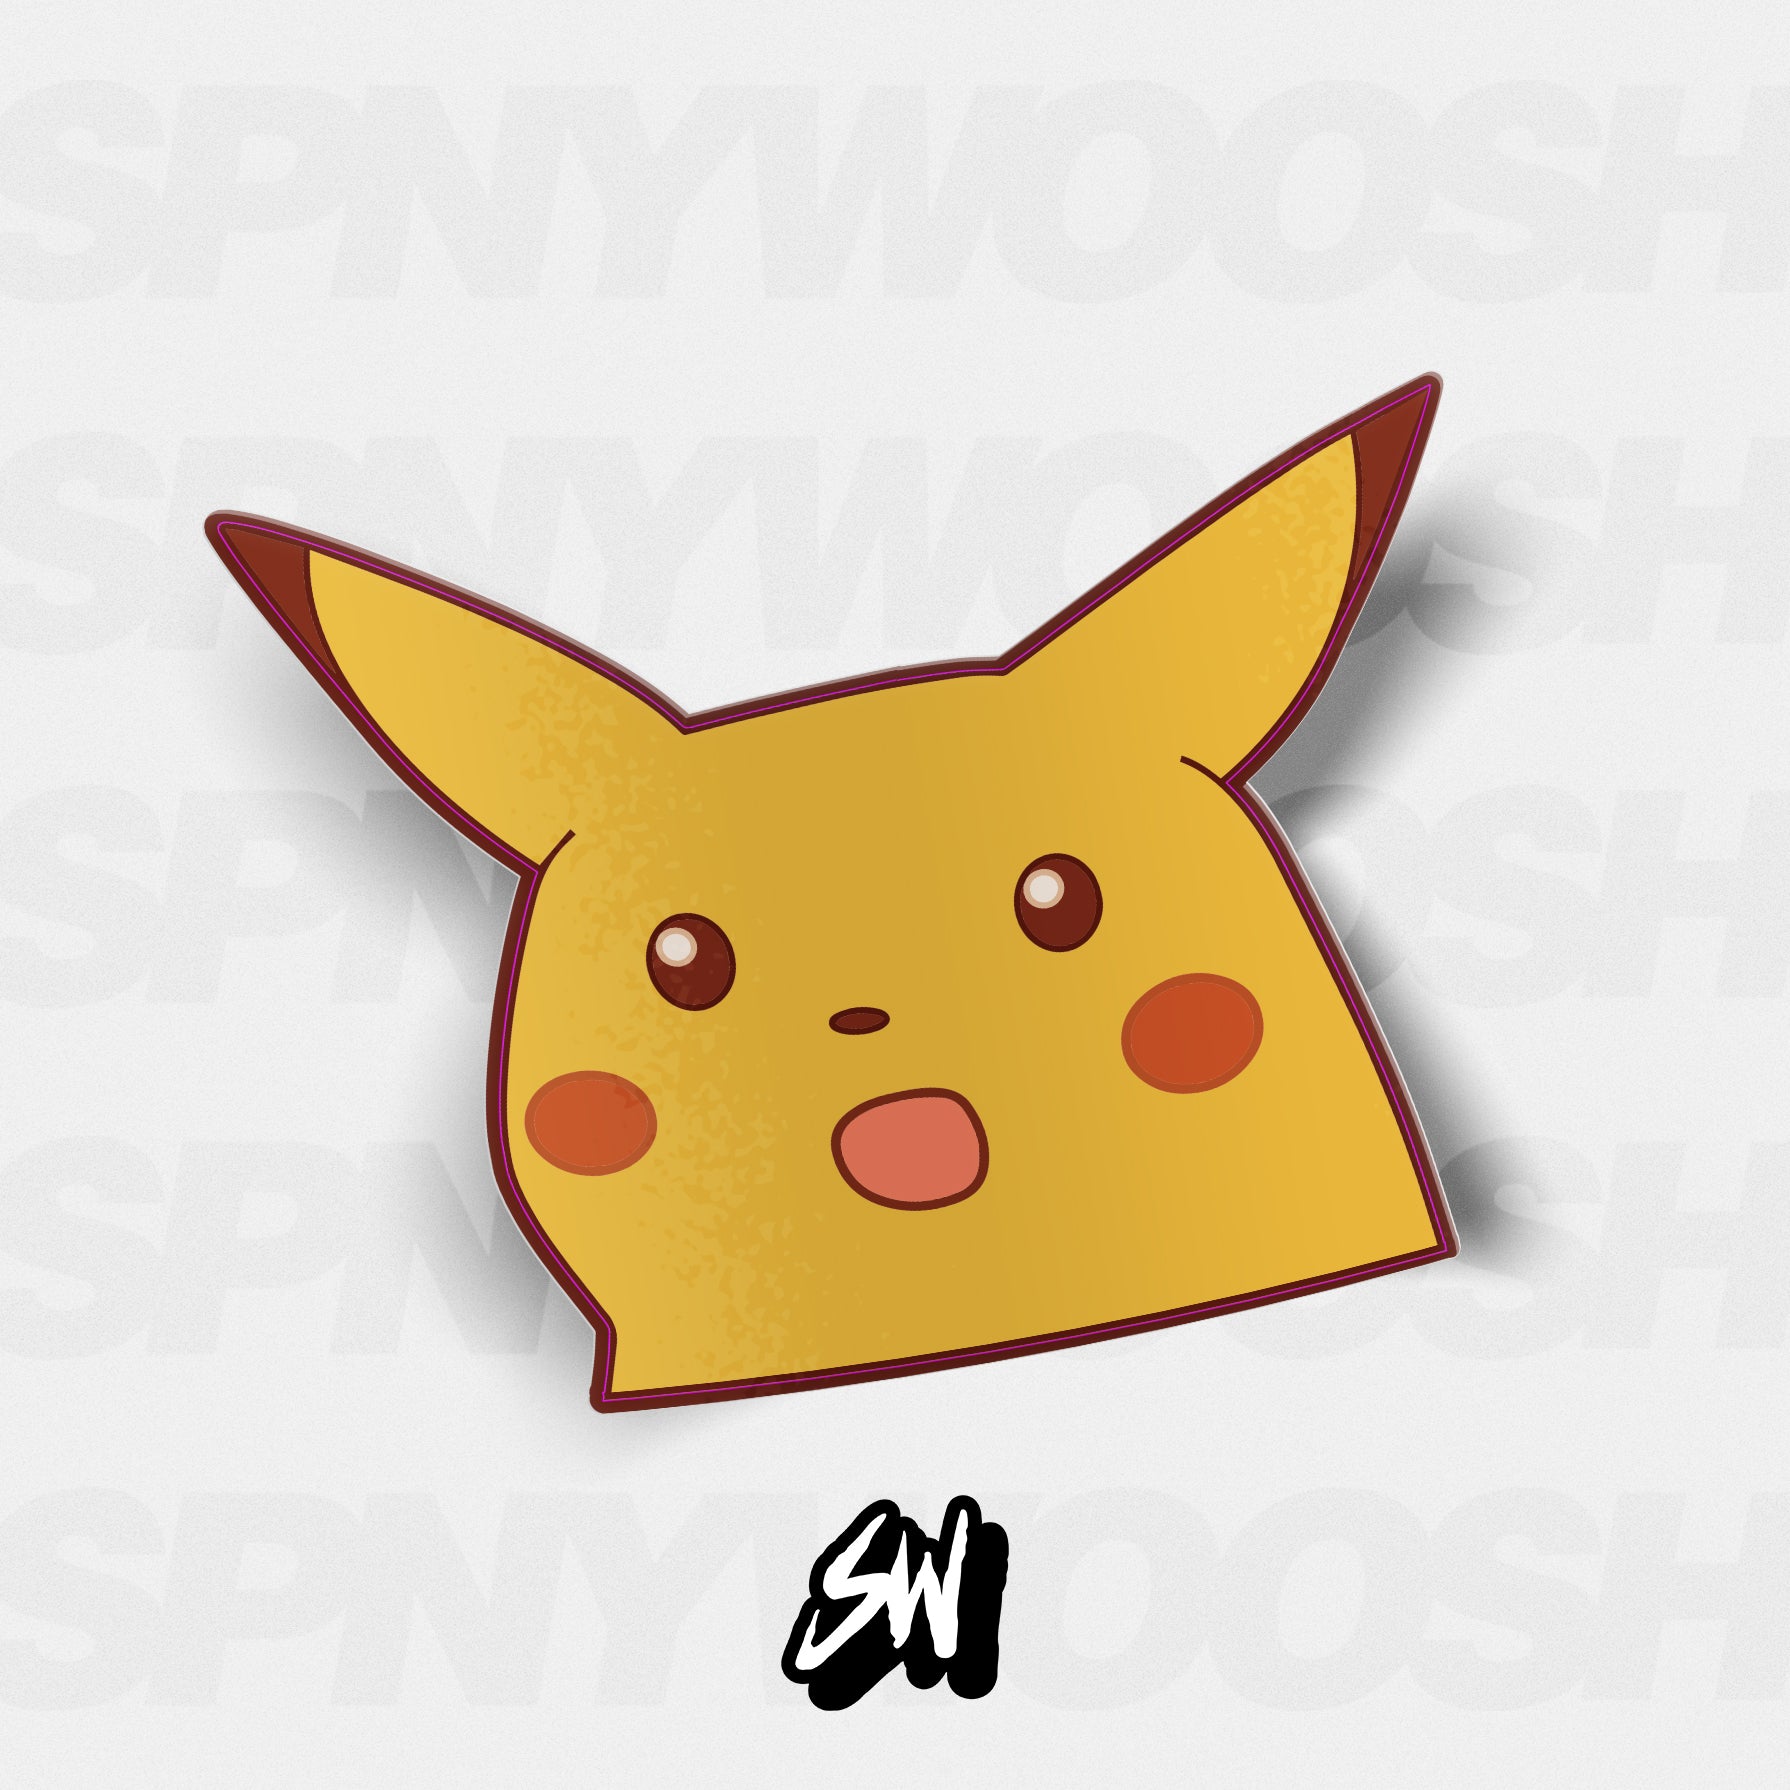 Surprised Pikachu Meme by TylerMascola on DeviantArt